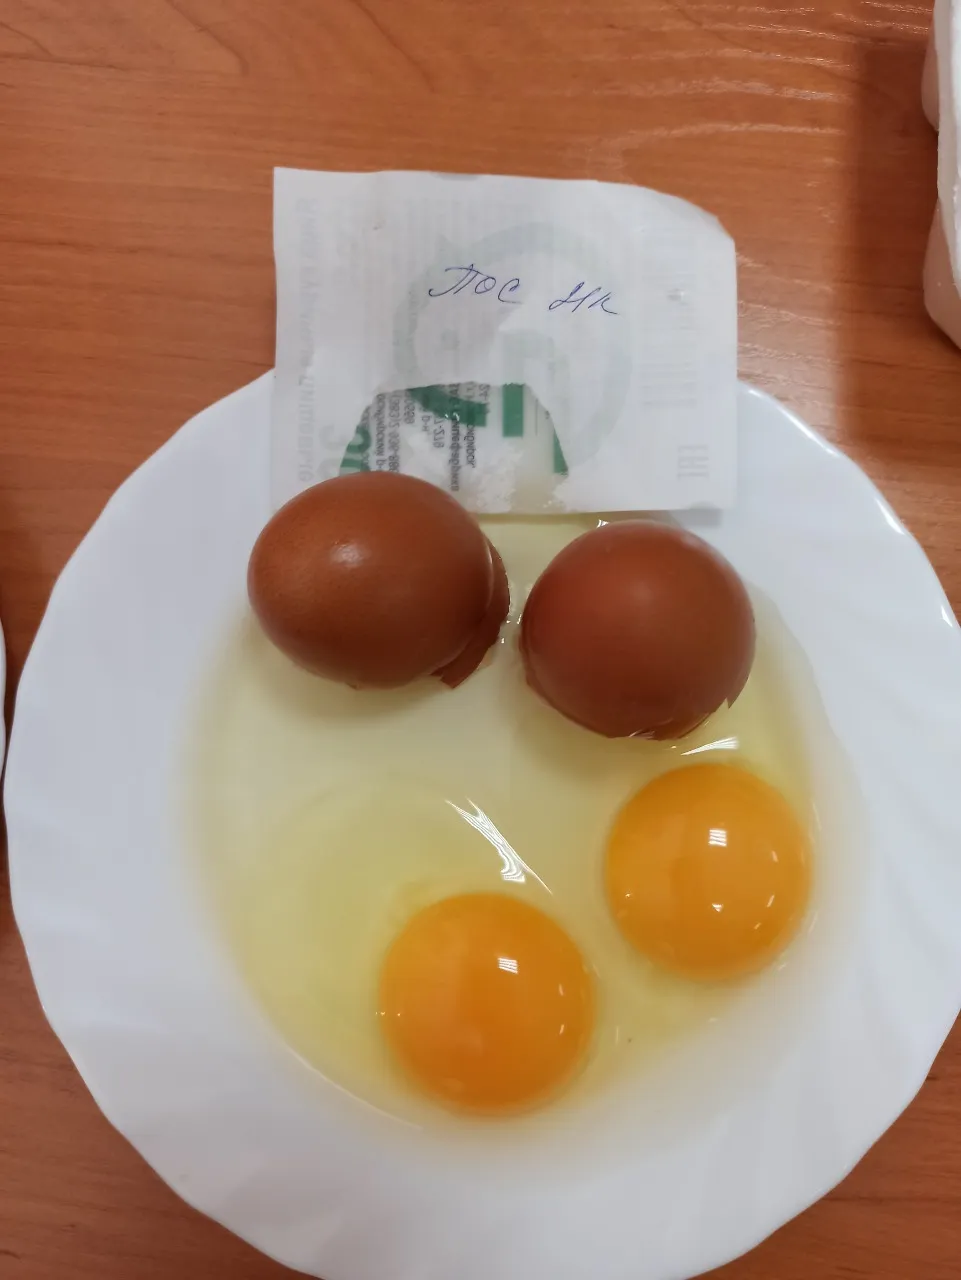 яйцо куриное от производителя  в Казахстане 2